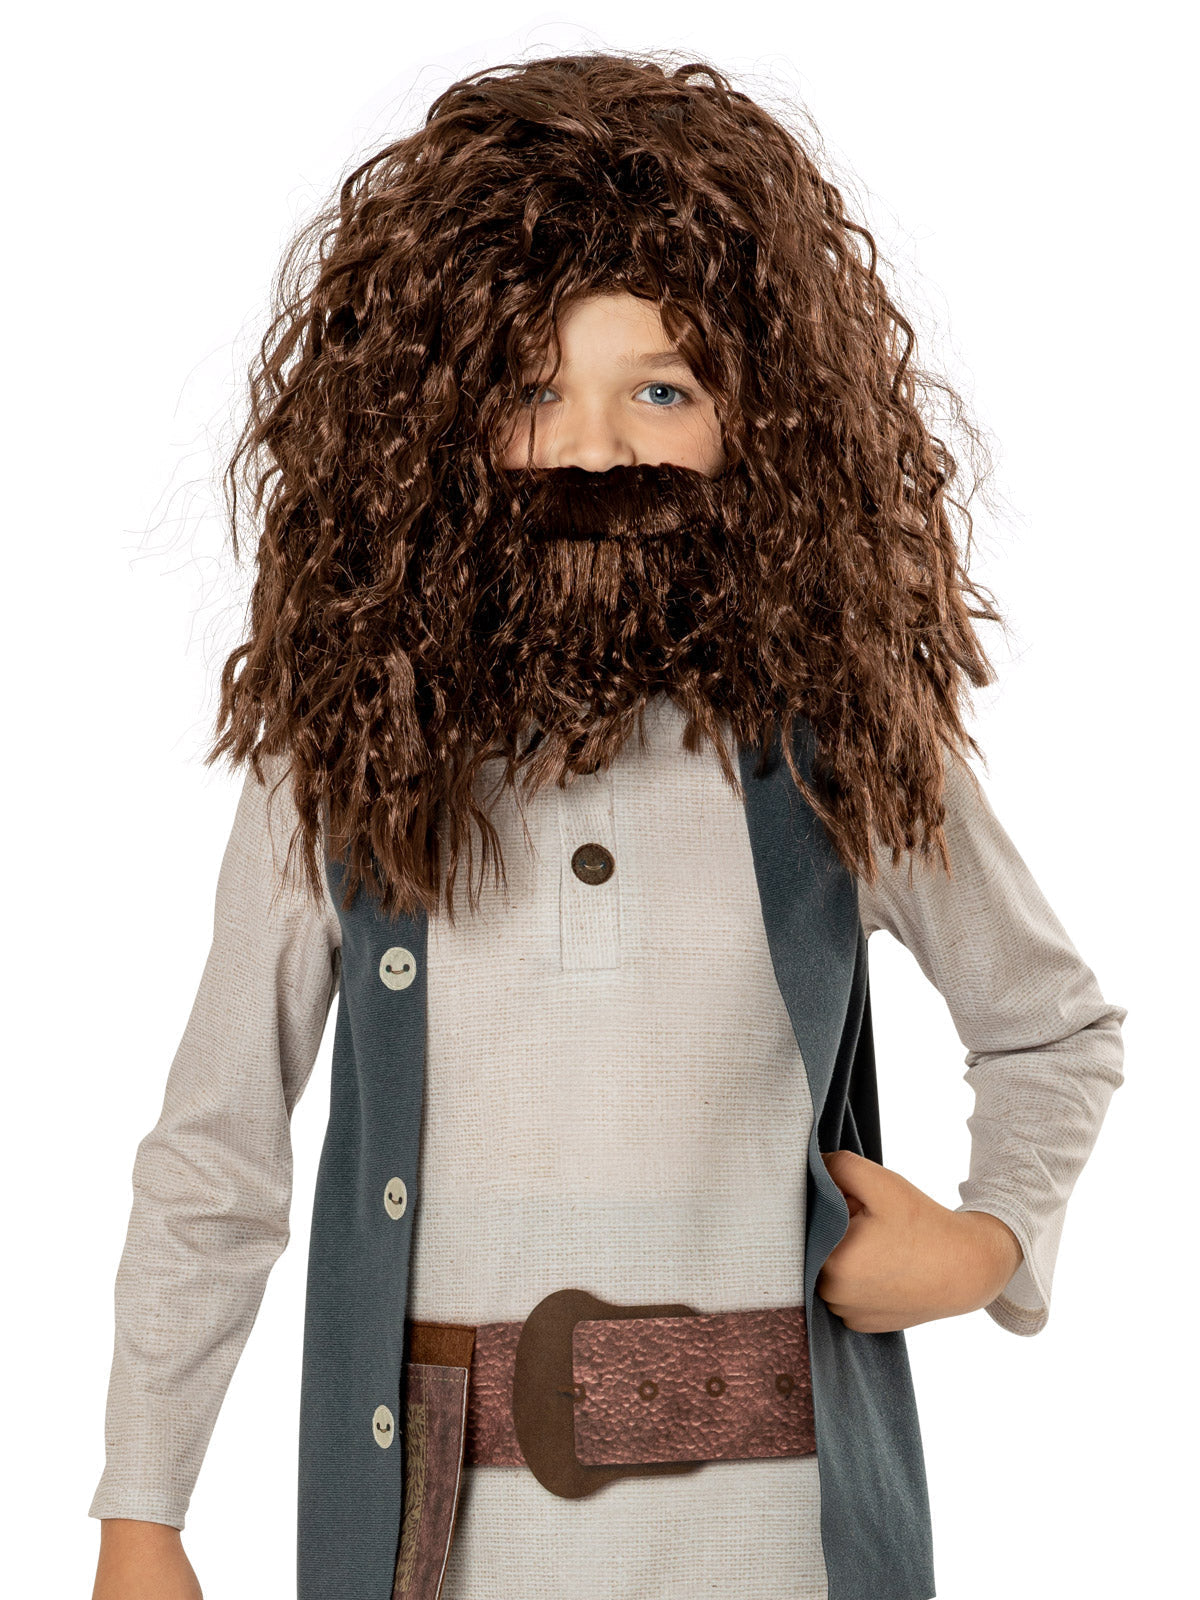 Hagrid Costume for Kids - Warner Bros Harry Potter